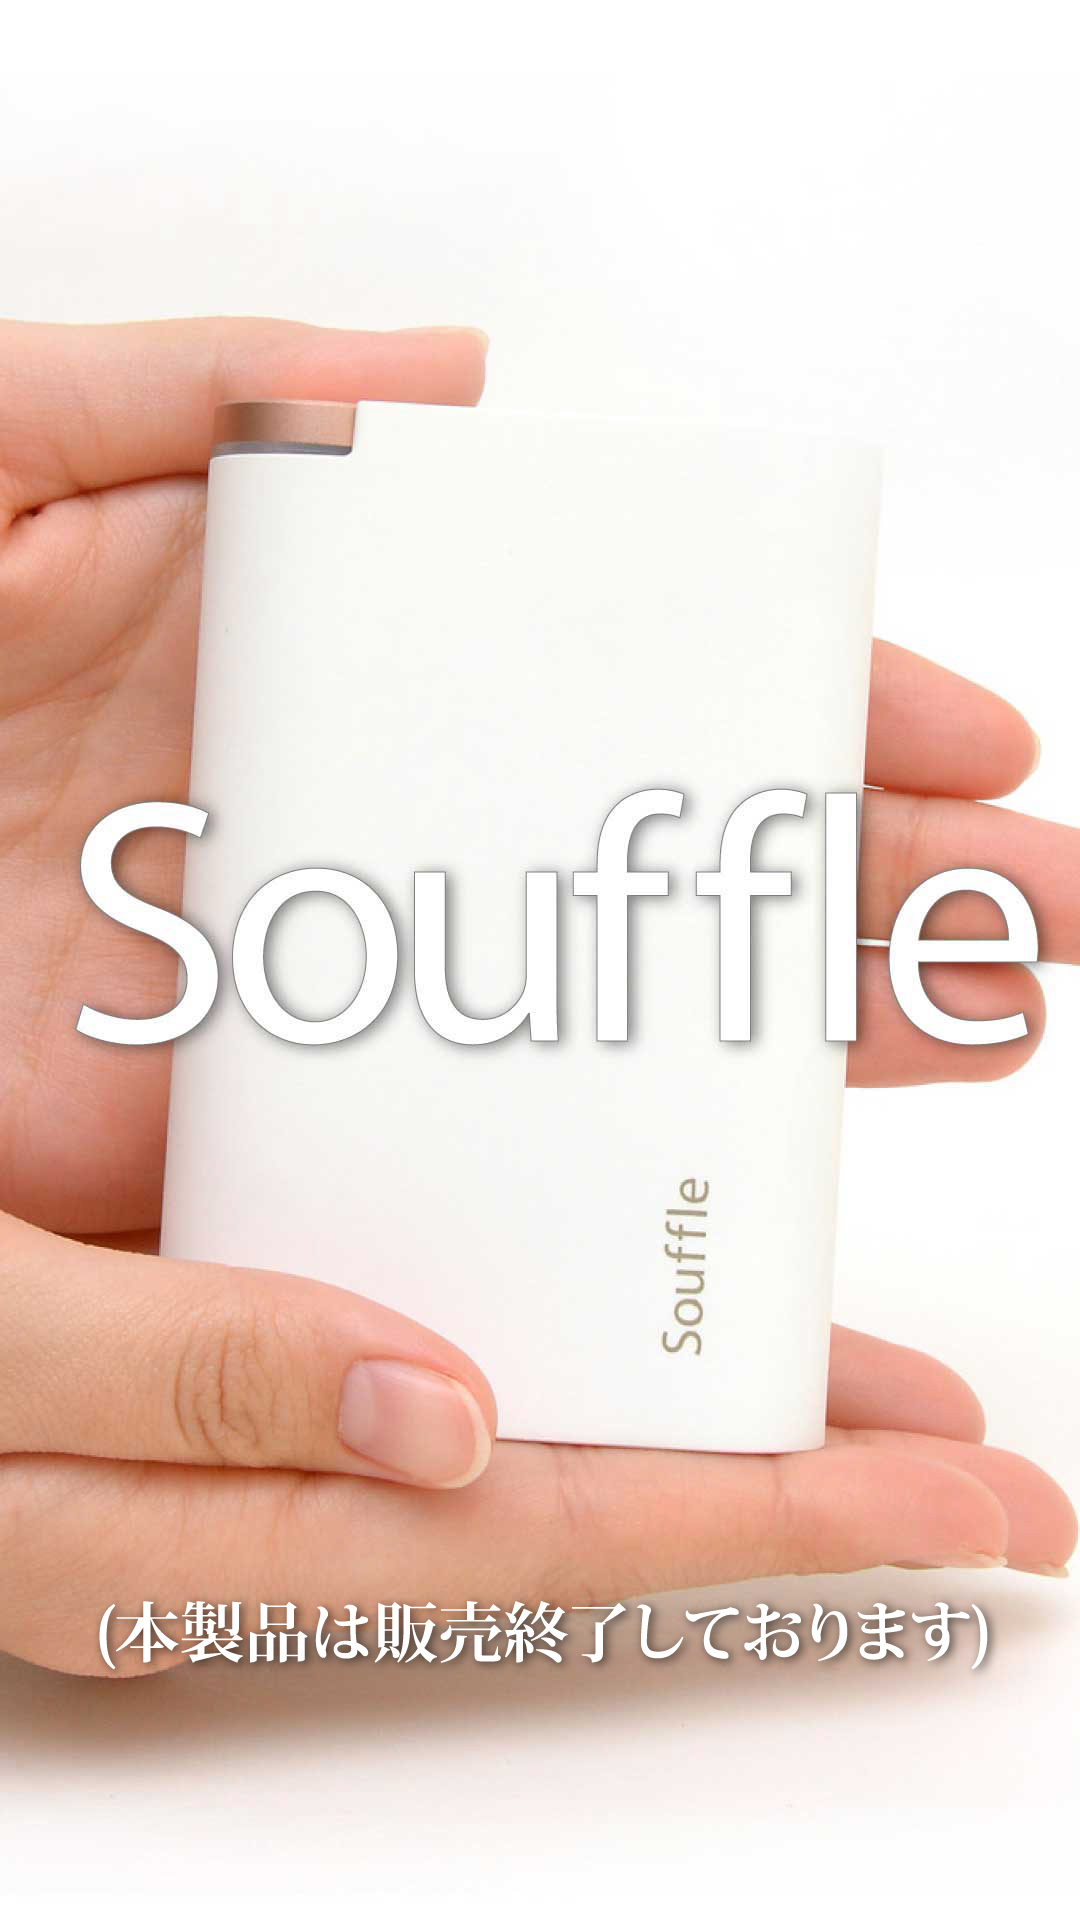 Souffle(本製品は販売終了しております)